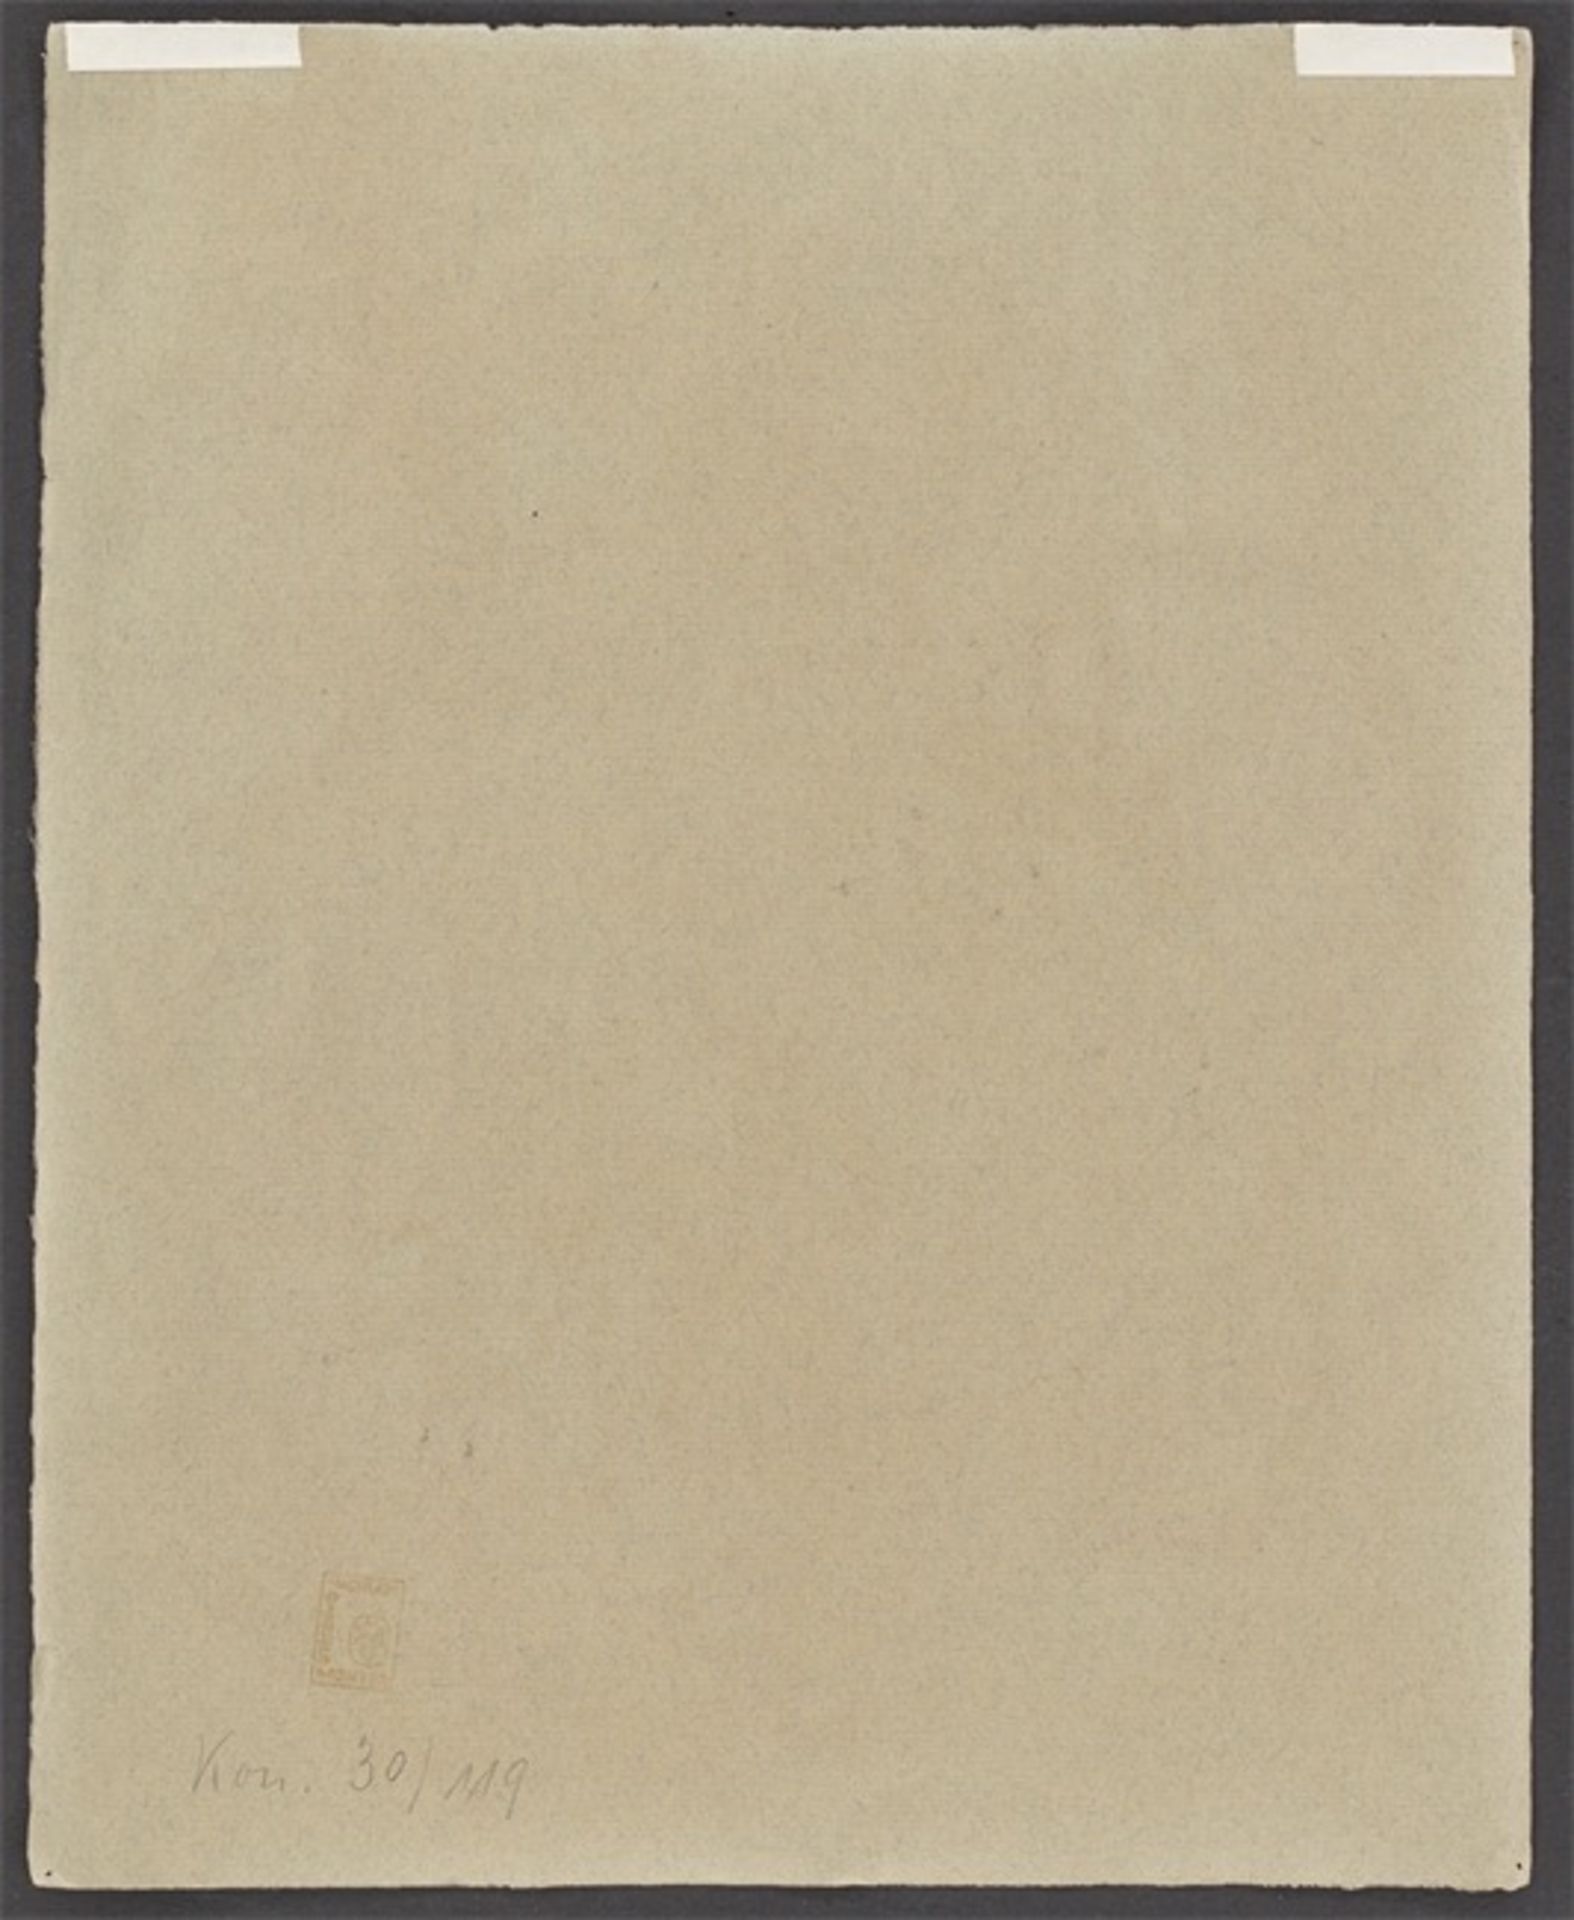 Gabriele Münter. Begonien und Porzellanhund. 1916 - Image 2 of 3